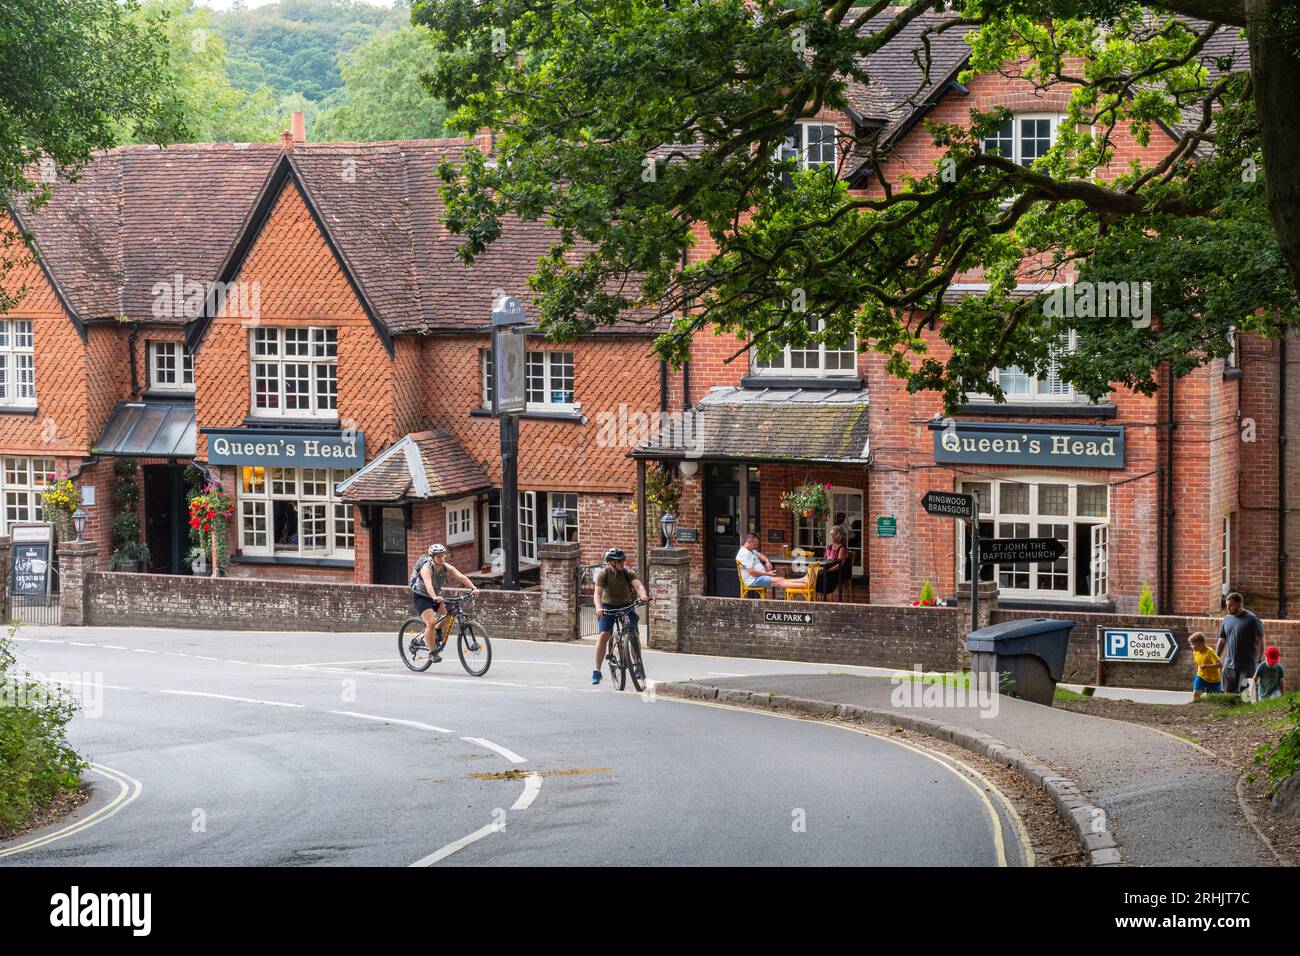 Le pub Queen's Head à Burley, un village de New Forest, Hampshire, Angleterre, Royaume-Uni, avec des gens buvant dehors, marchant et faisant du vélo Banque D'Images